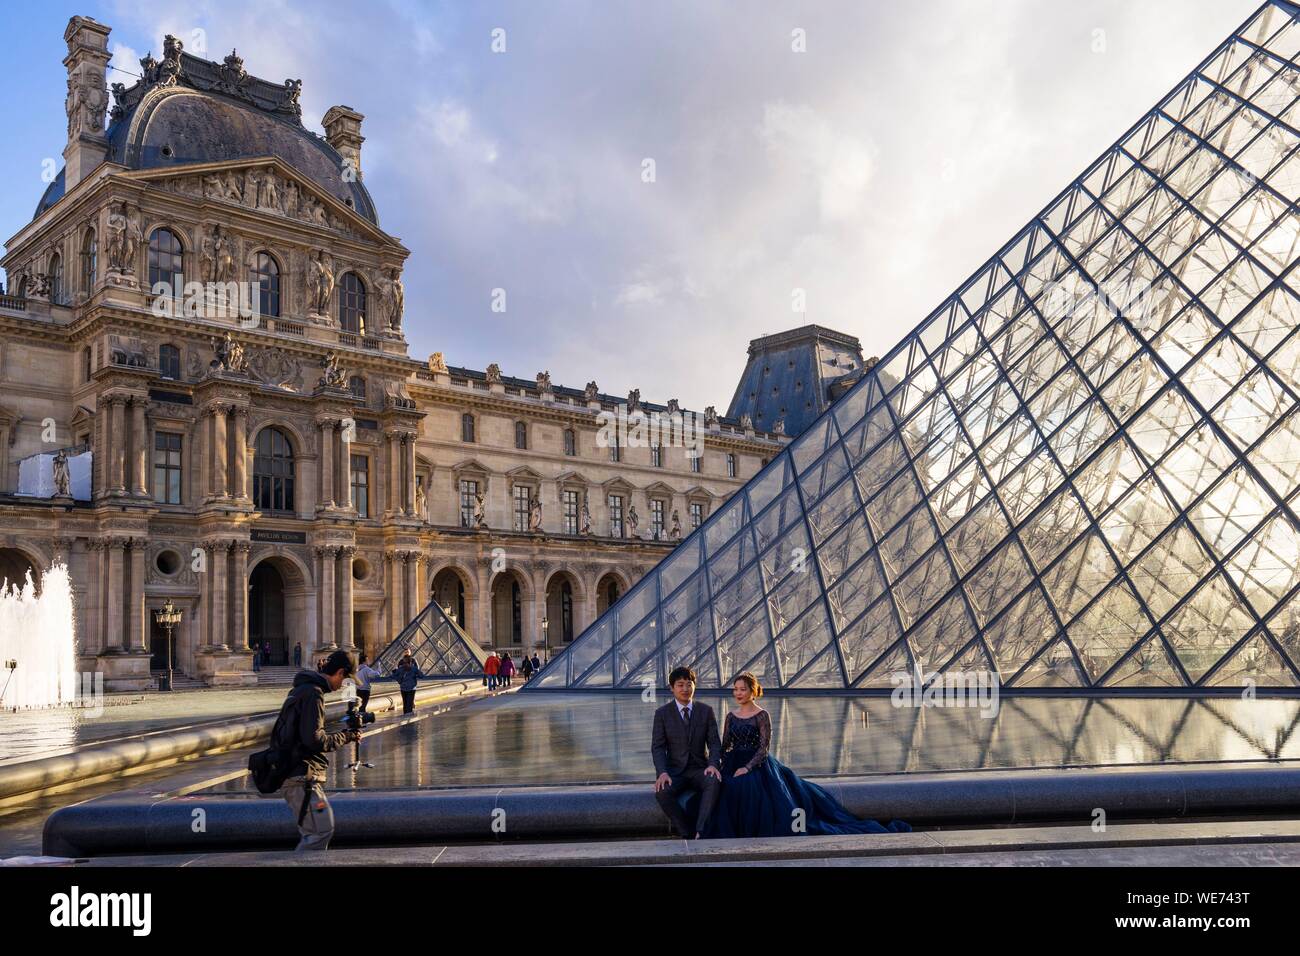 Frankreich, Paris, Bereich als Weltkulturerbe von der UNESCO, dem Louvre Museum, Louvre Pyramiden aufgeführt von dem Architekten Ieoh Ming Pei Stockfoto